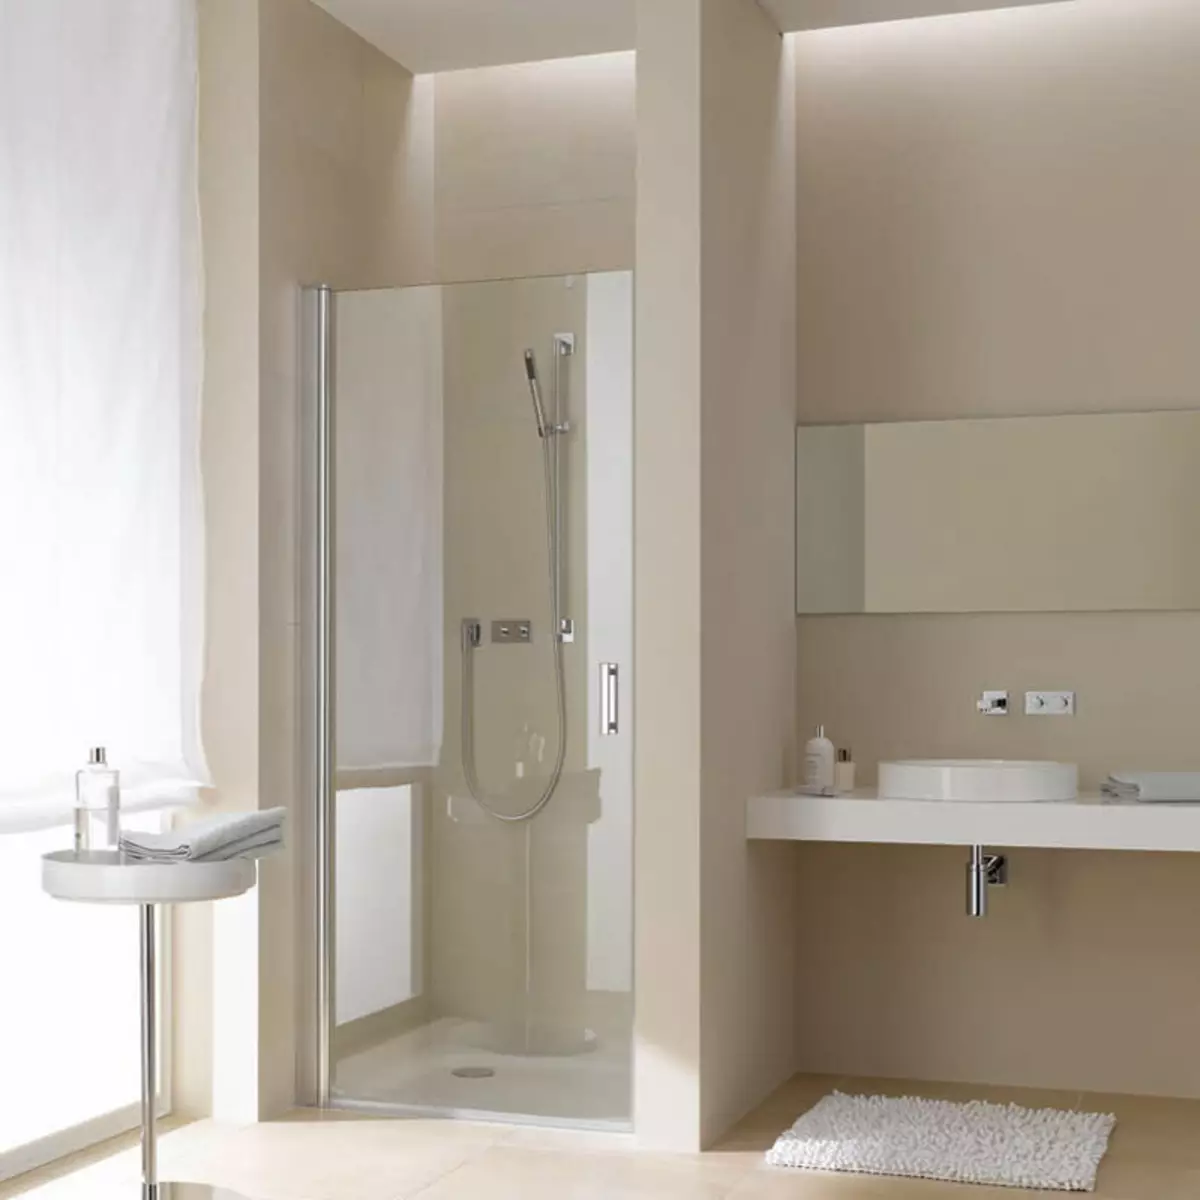 Dušas vonios kambaryje be salono (86 nuotraukos): vonios kambario dizaino parinktys su dušu be padėklų ir plytelių kabinų, projektų 21384_21